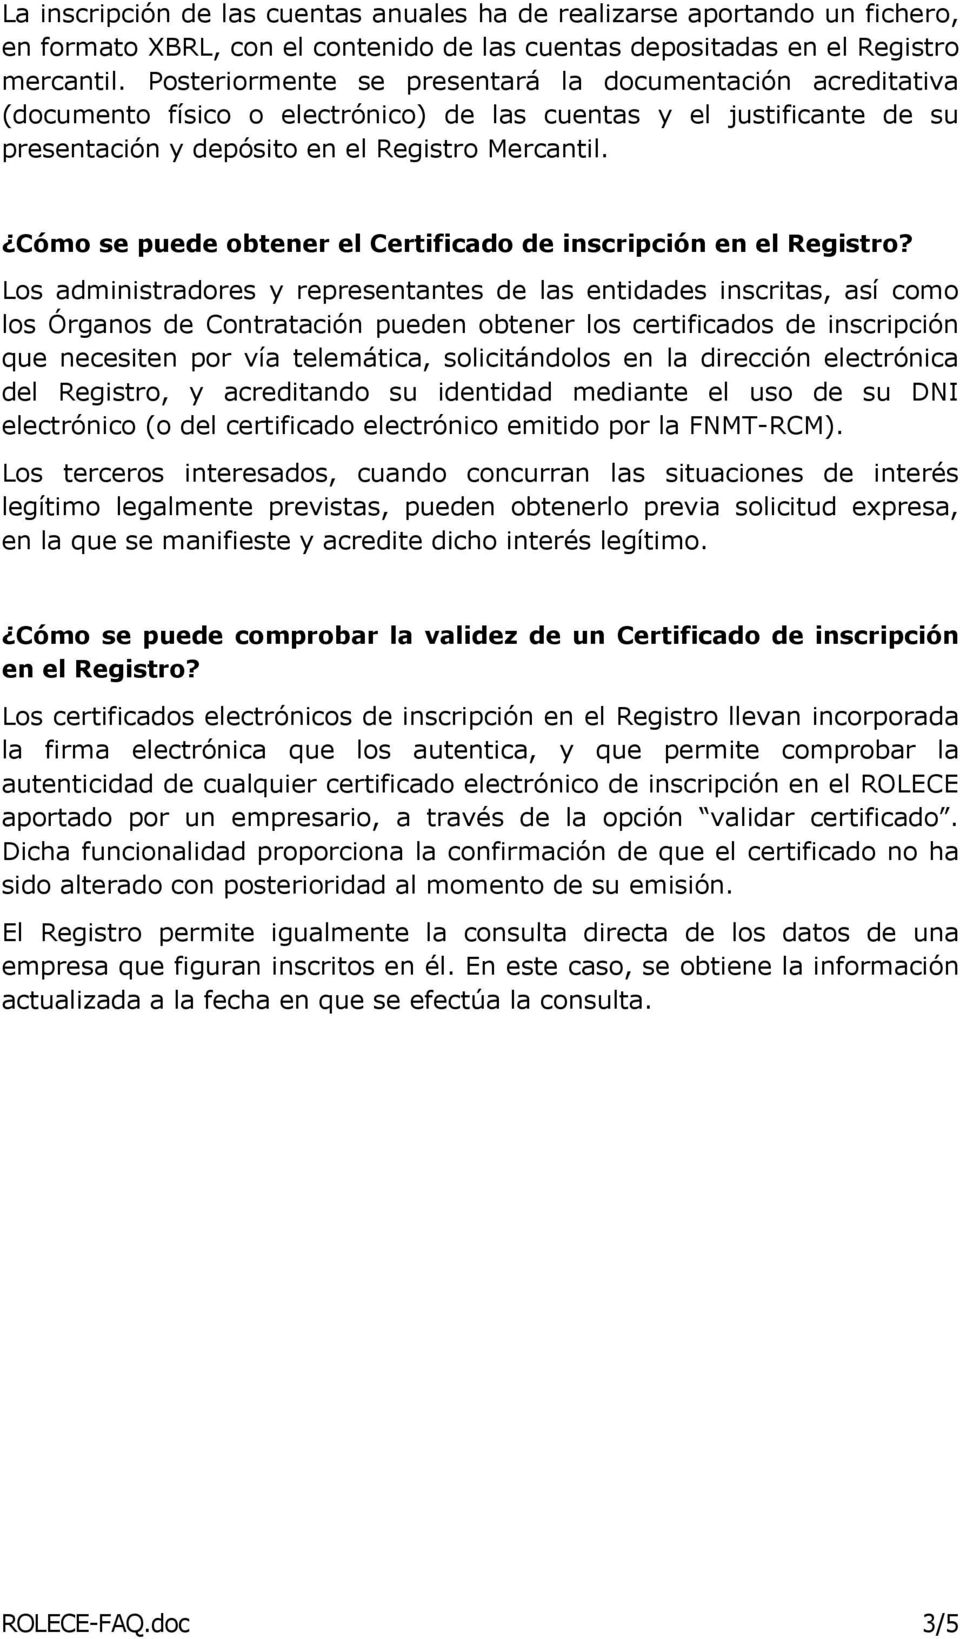 Cómo se puede obtener el Certificado de inscripción en el Registro?